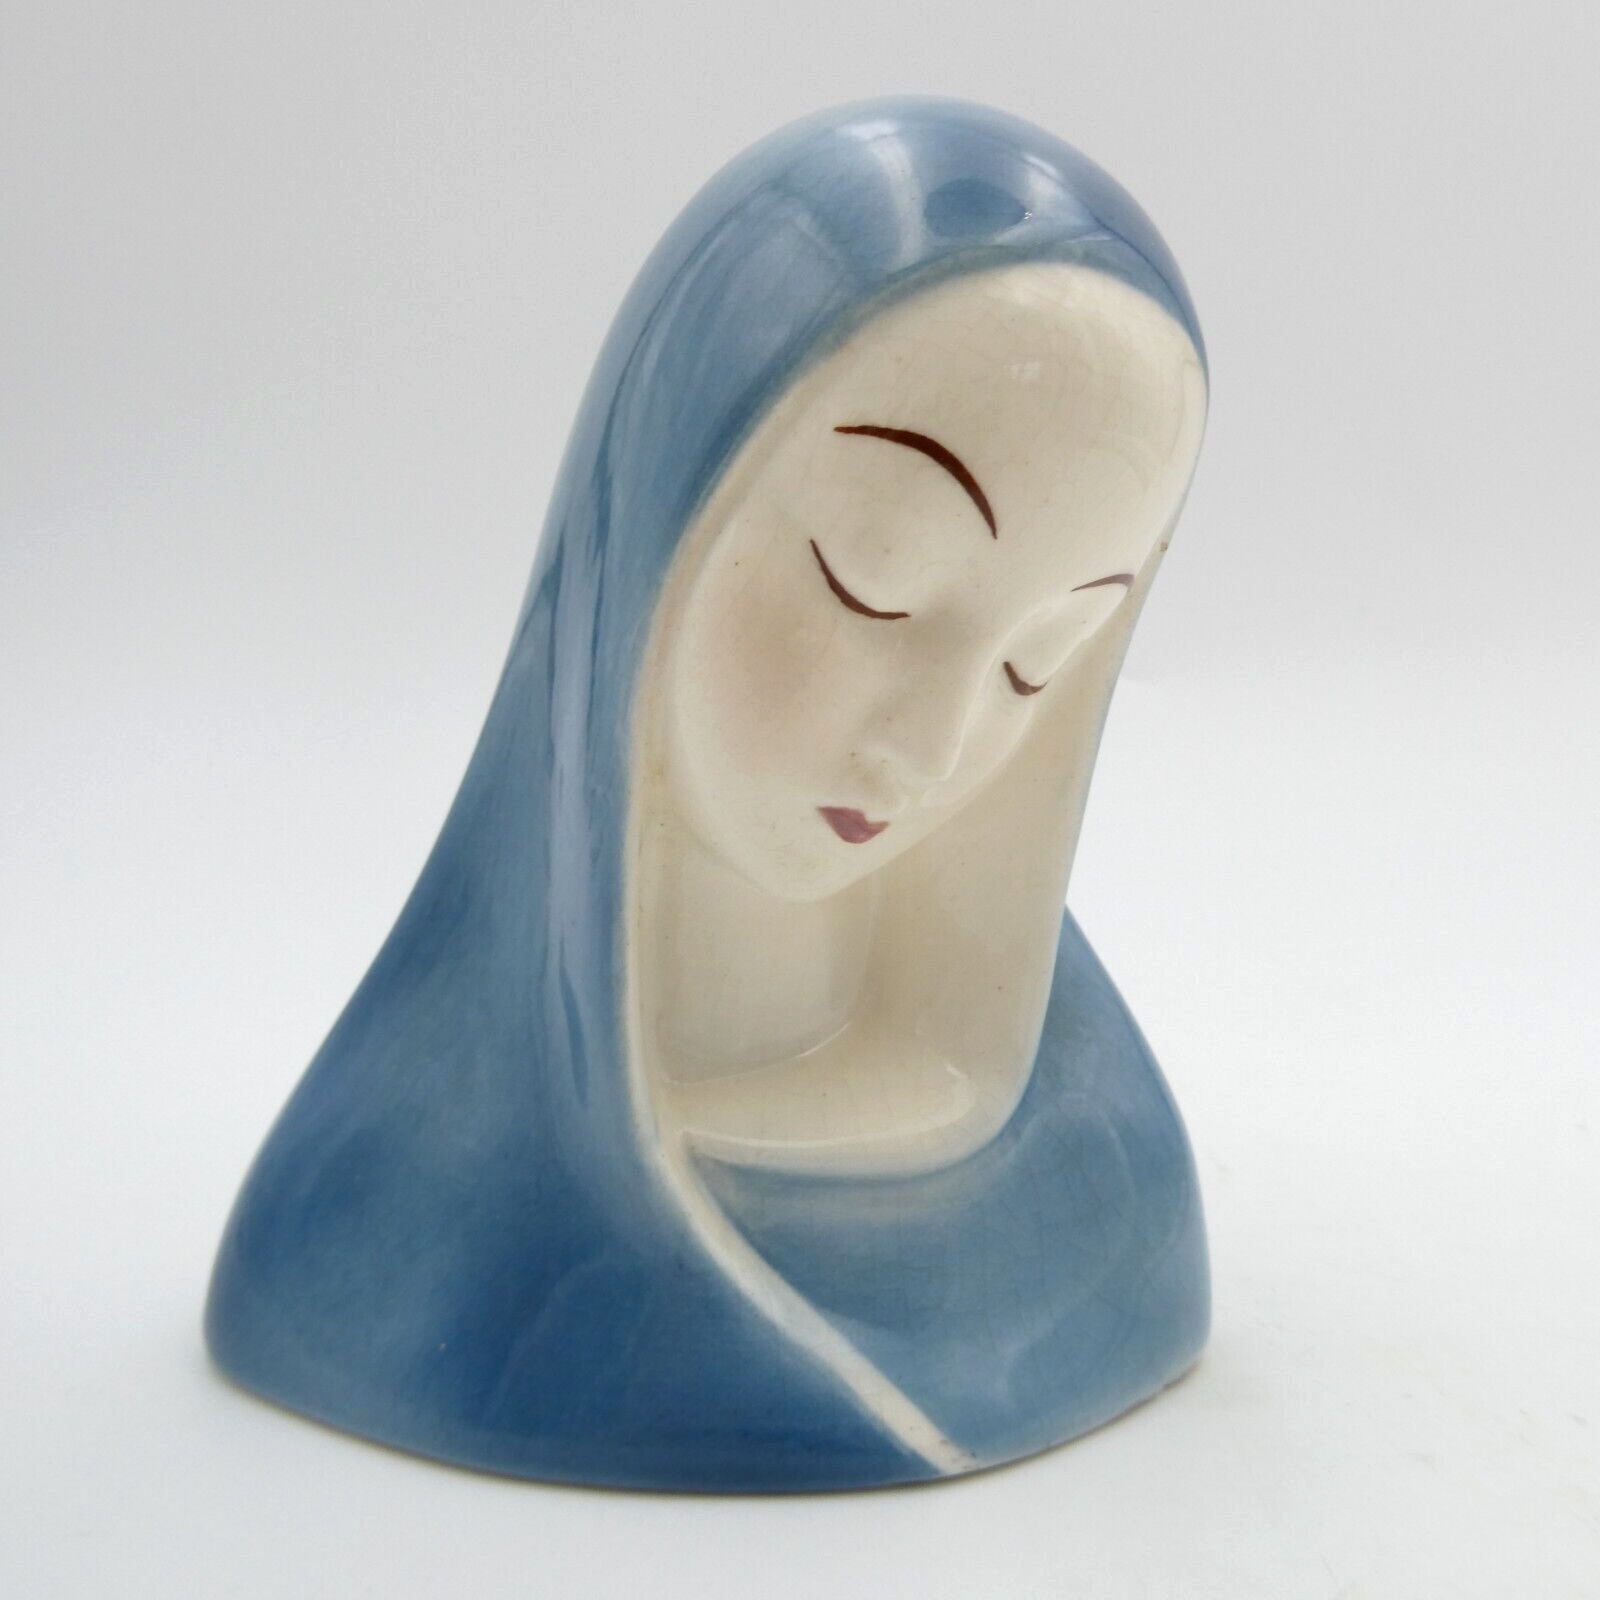 Goldscheider Blue Madonna Mary Bust Figurine 4.5 inch Porcelain VTG Signed USA